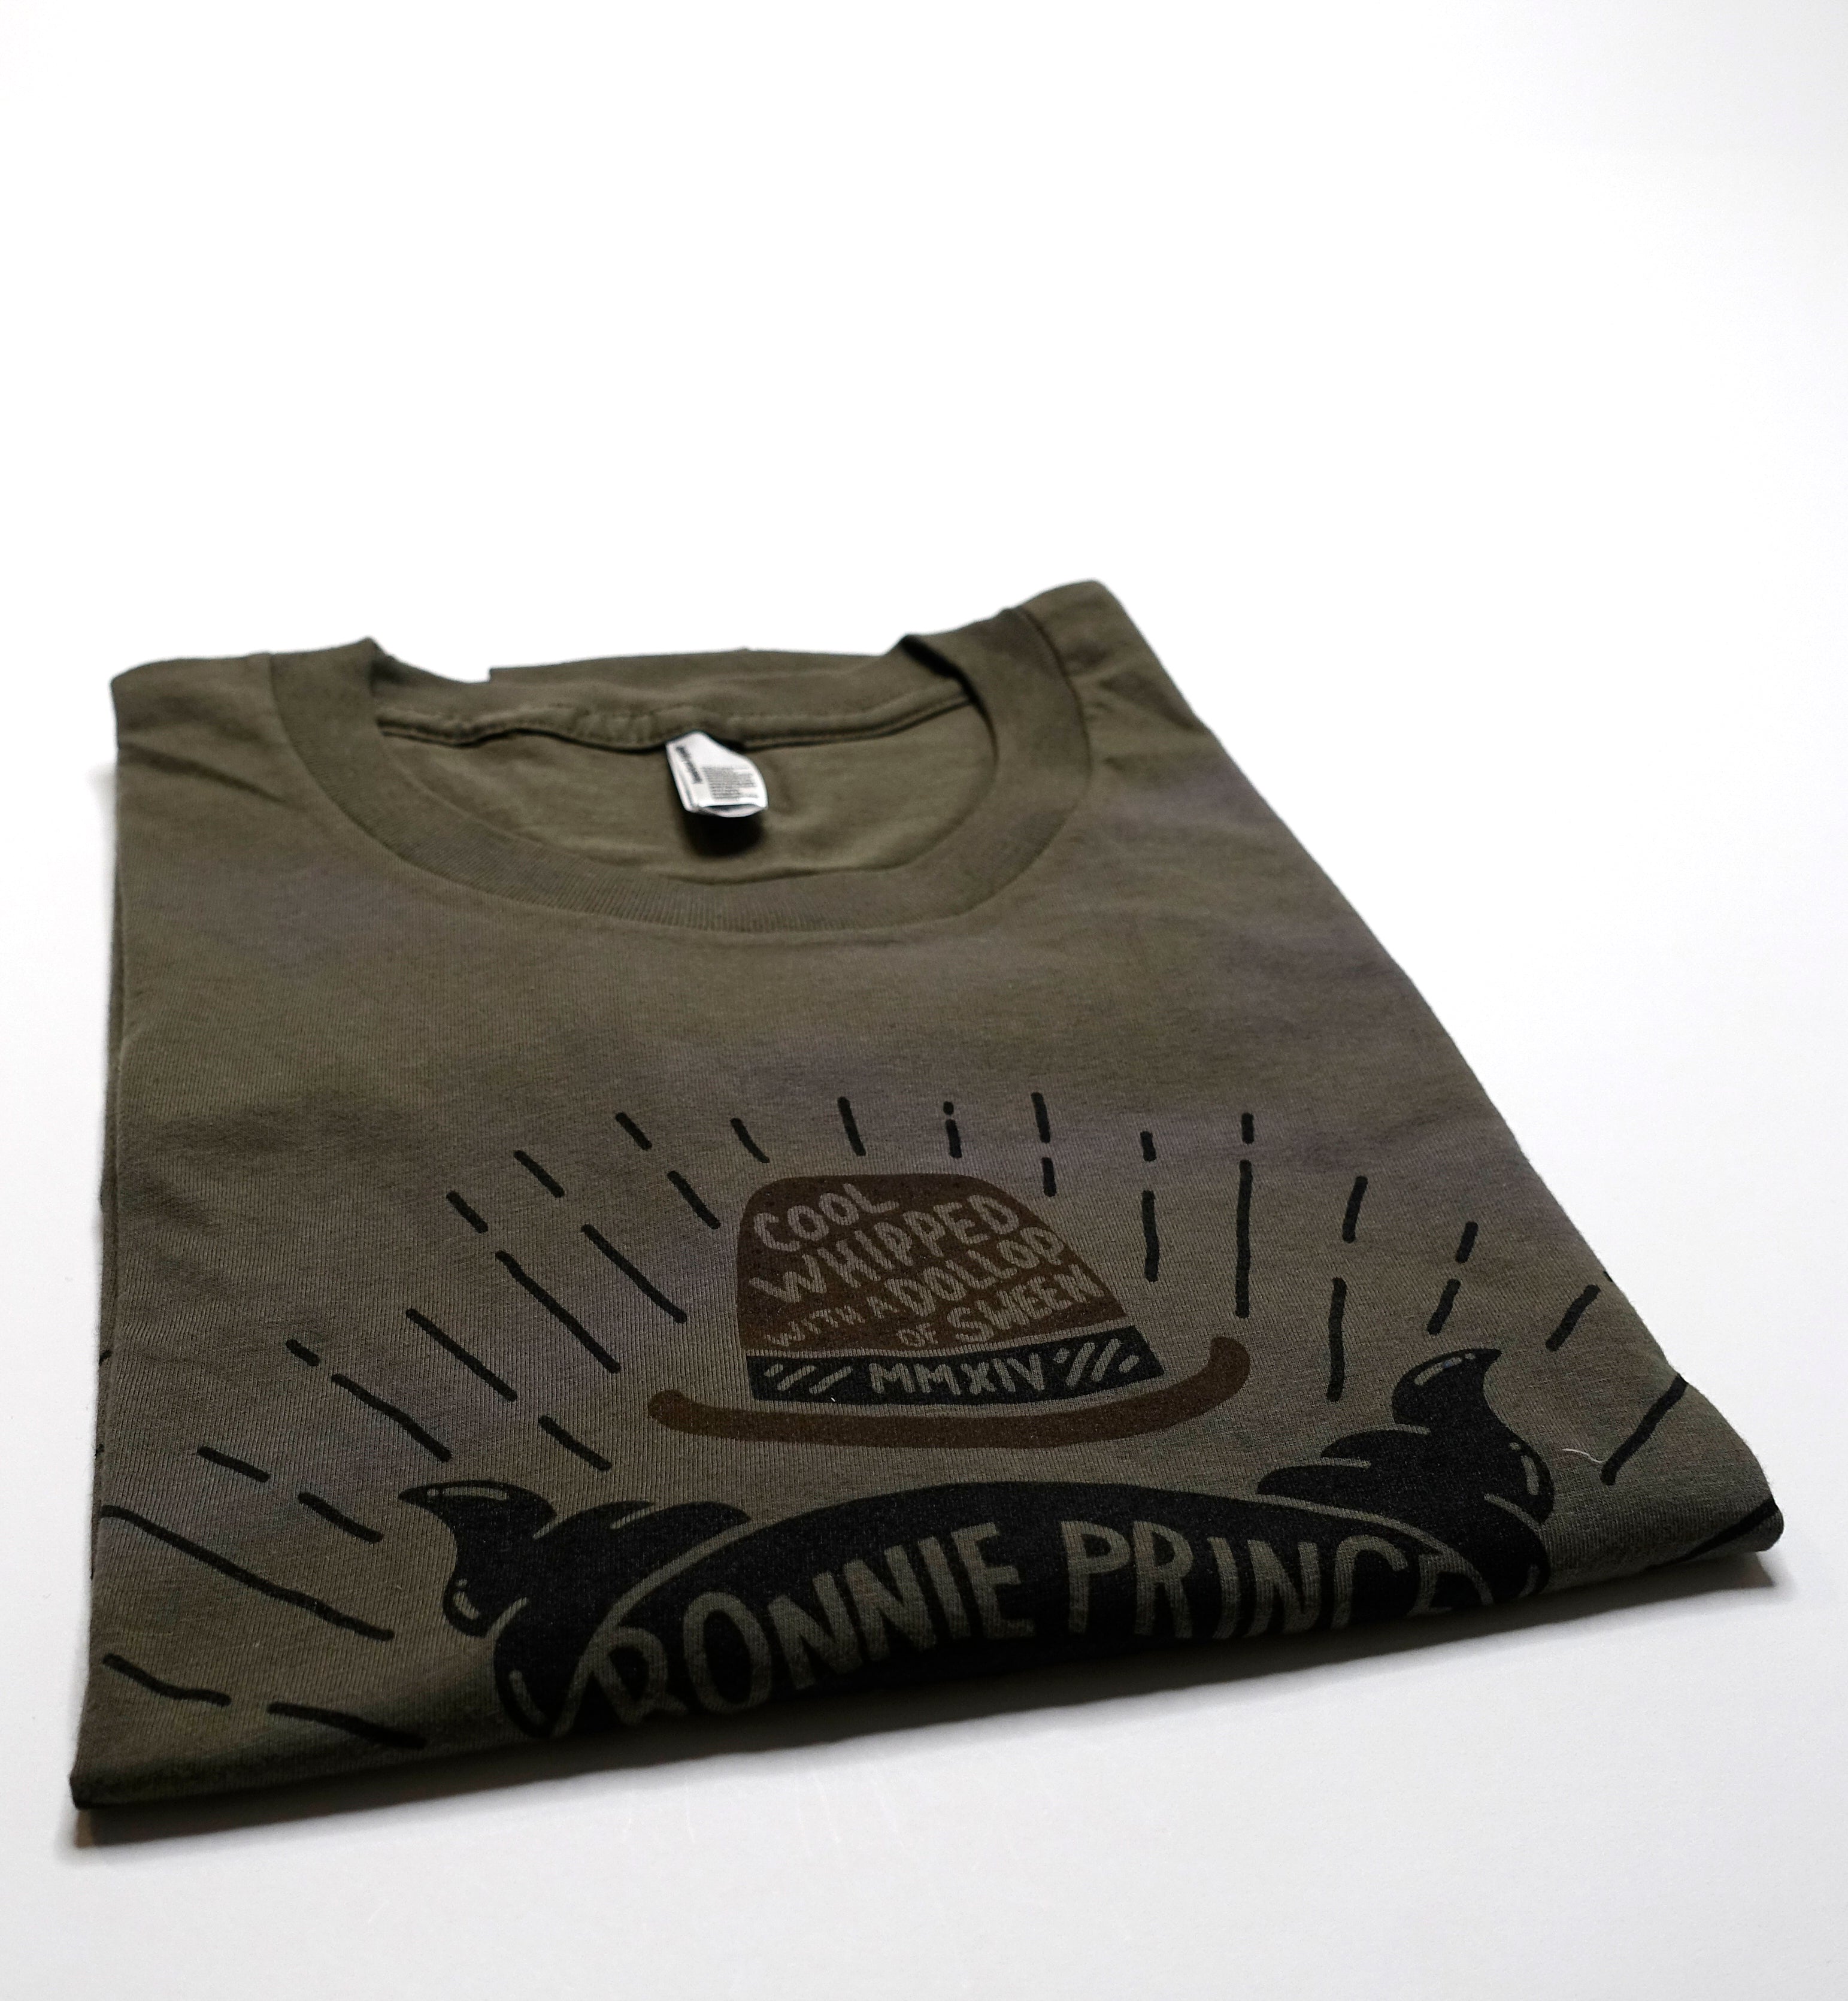 Bonnie "Prince" Billy & David Ferguson - 2013 Tour Shirt Size Large